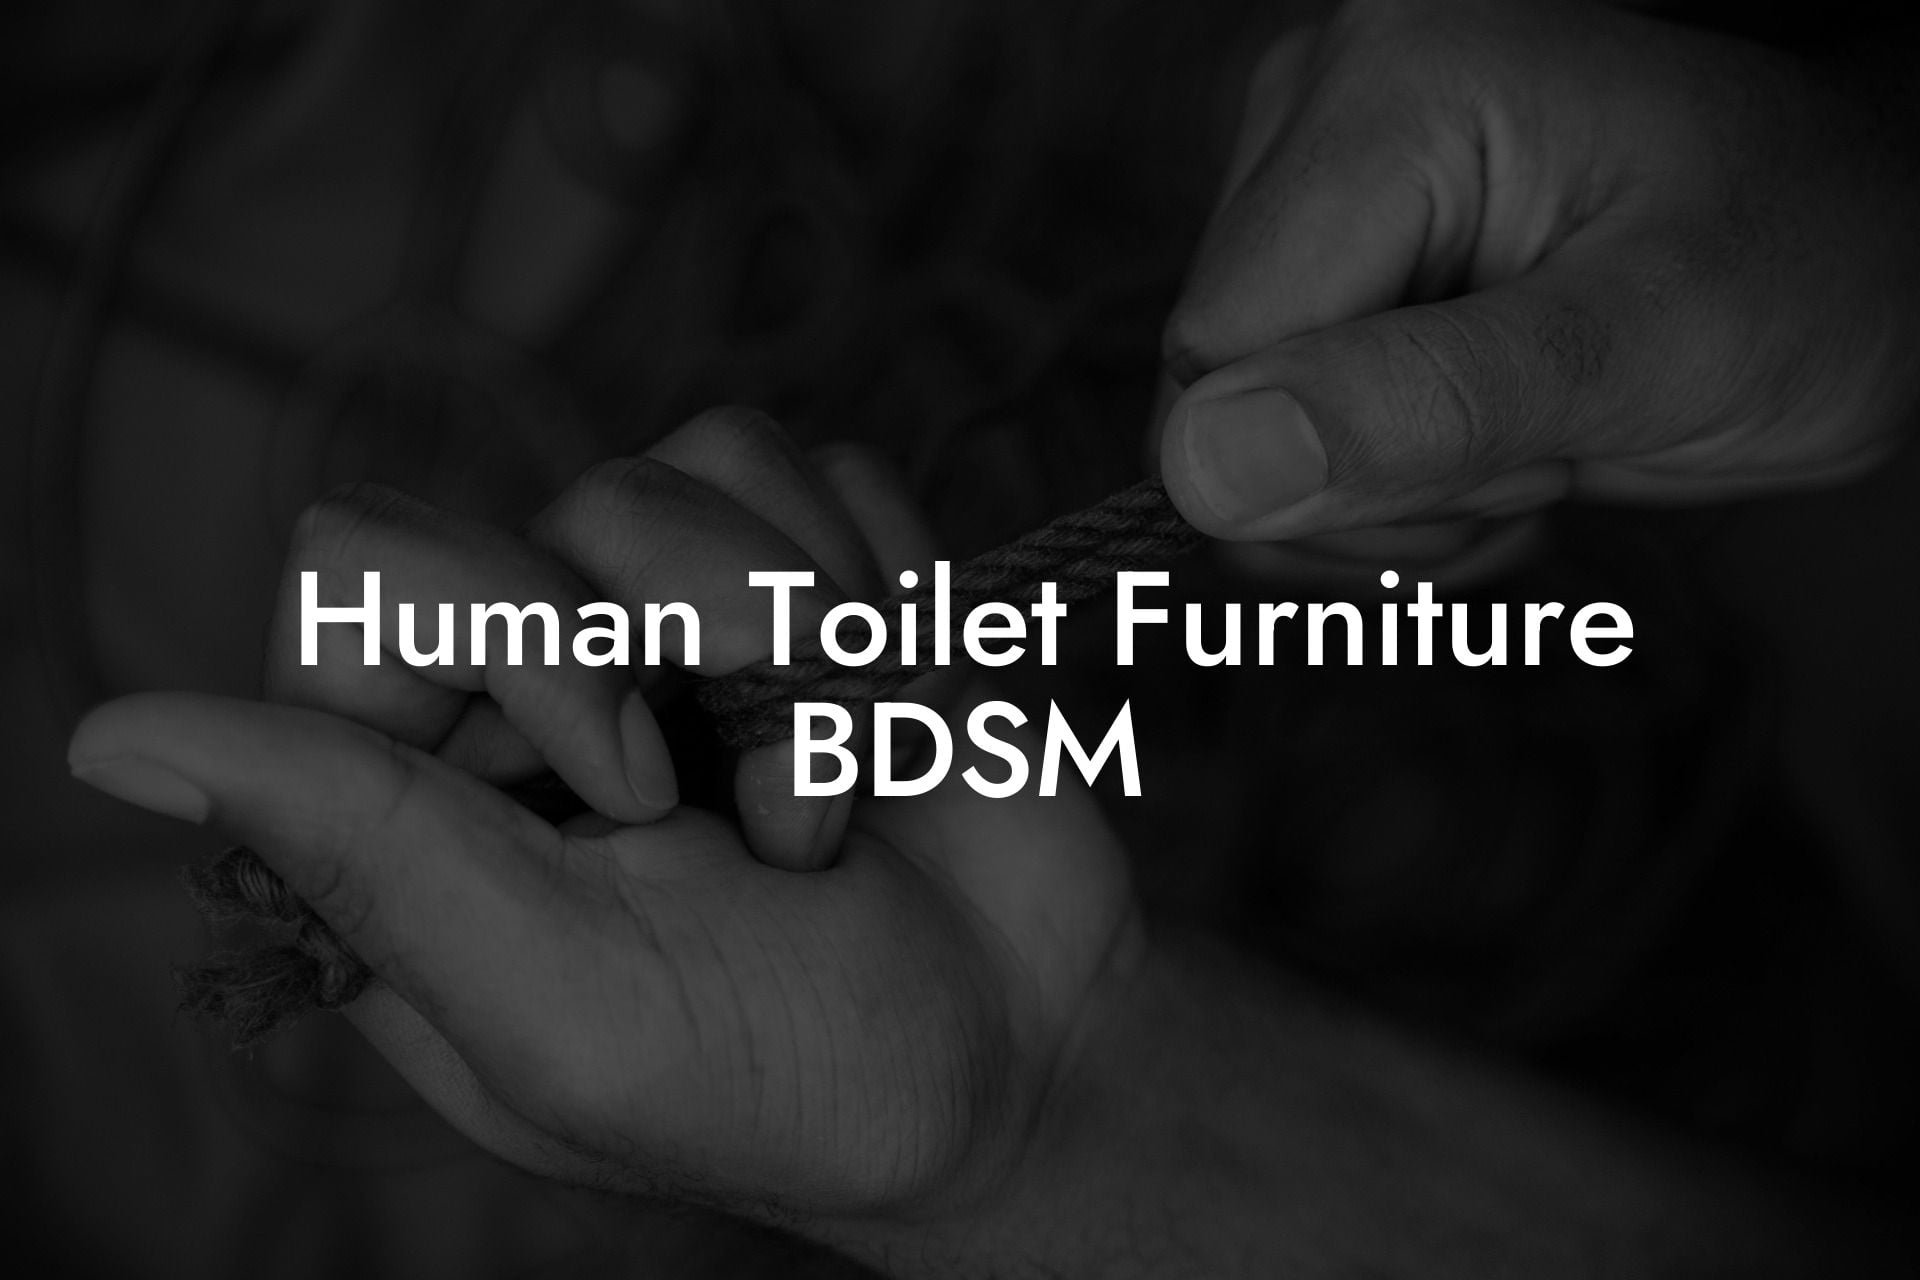 Human Toilet Furniture BDSM